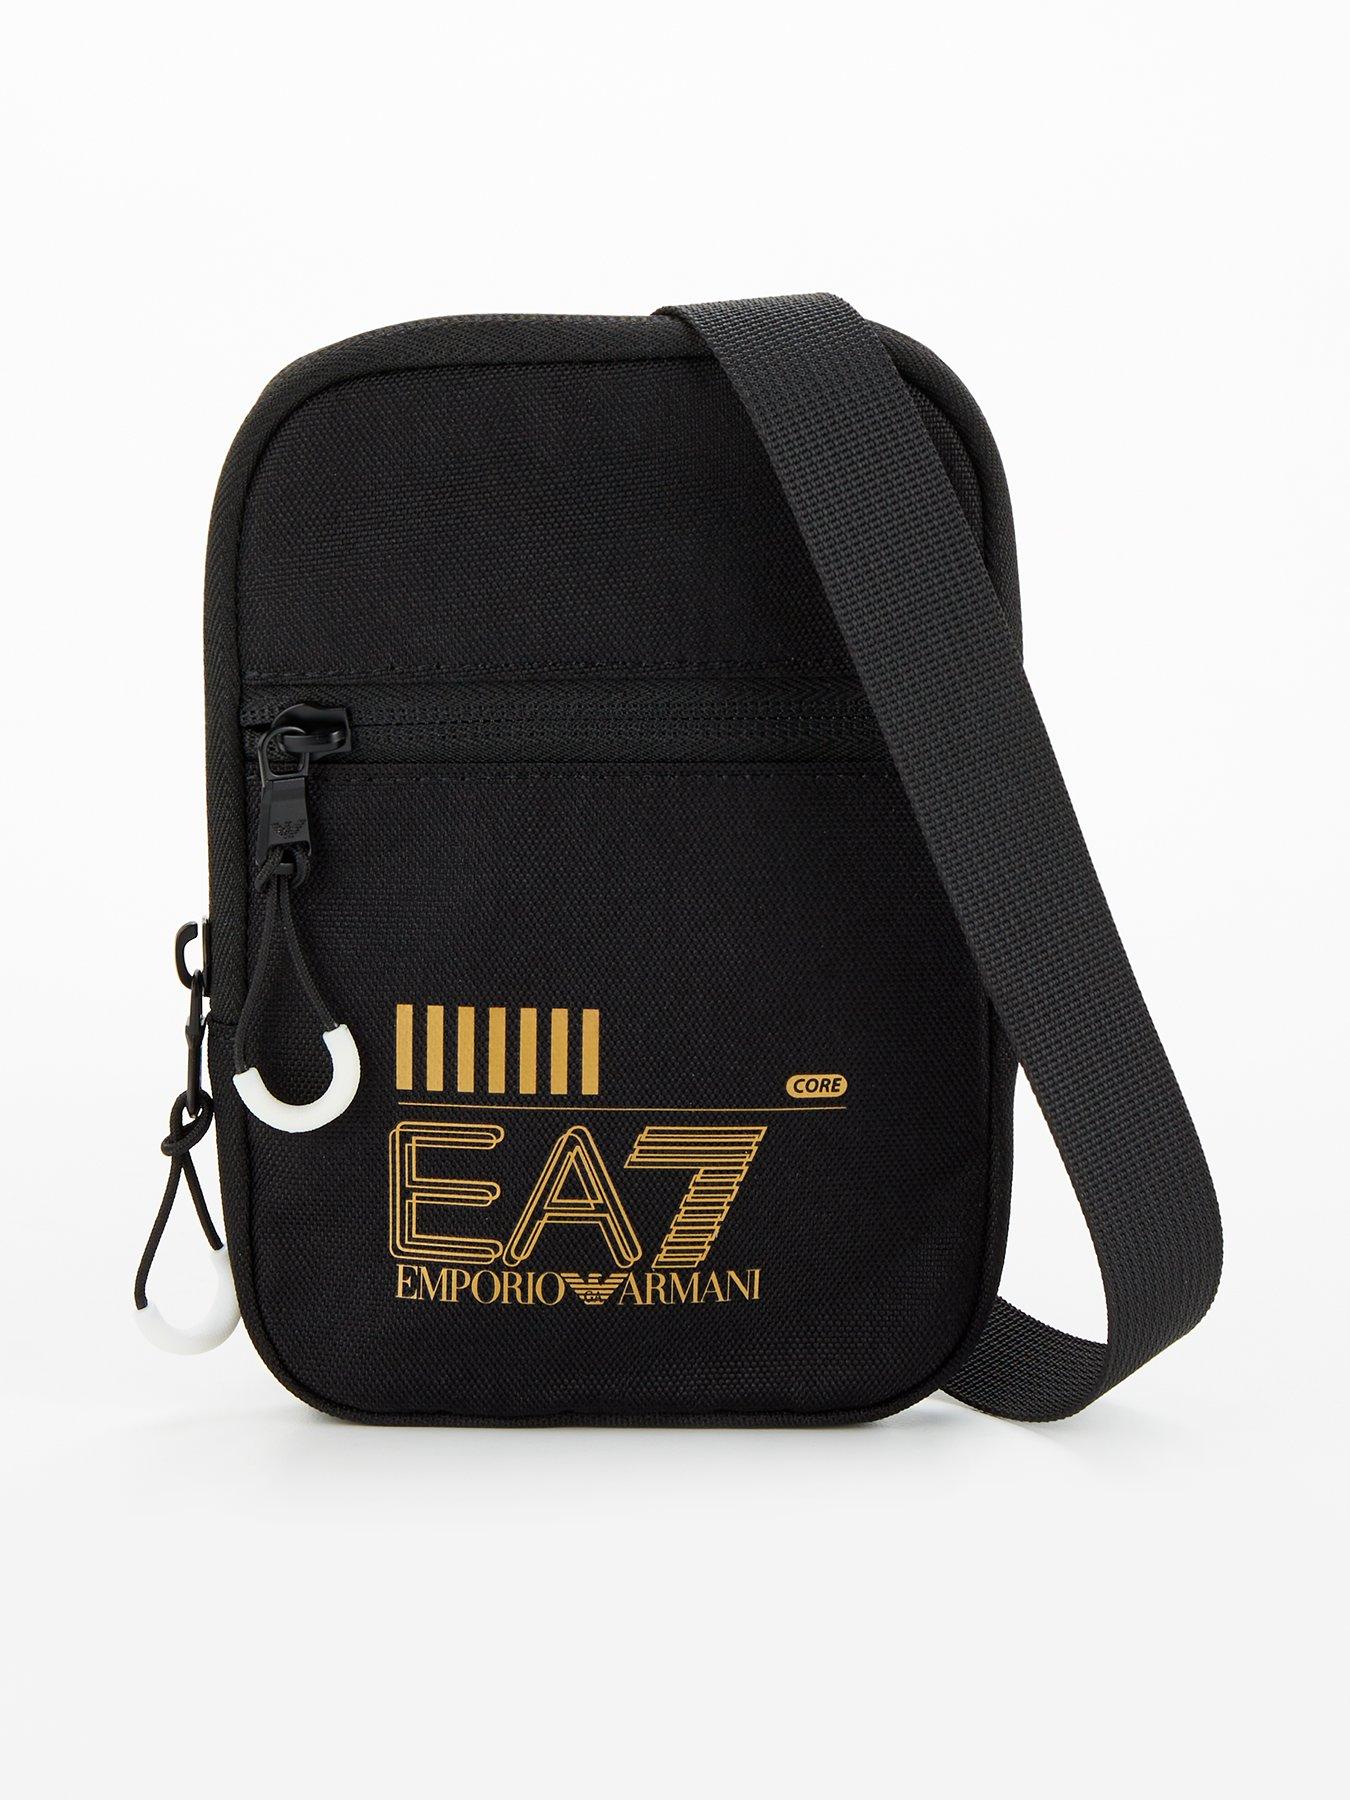 EA7 Emporio Armani Train Core Mini Pouch Messenger Bag - Black | very.co.uk